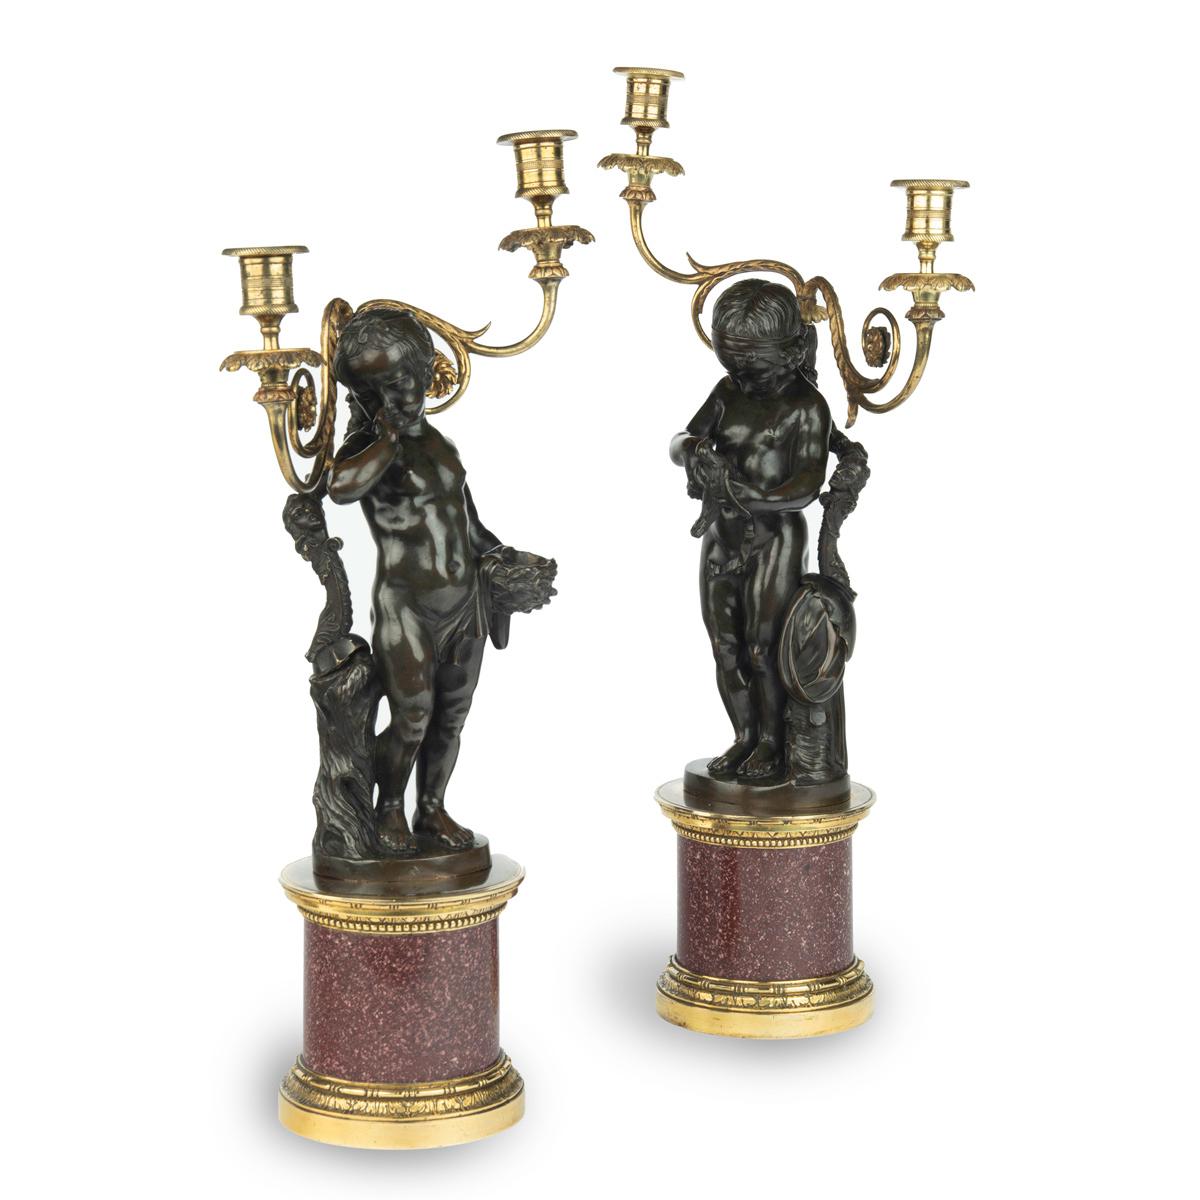 Paire de candélabres égyptiens en bronze et porphyre d'après Charles-Antoine Bridan, comprenant chacun une figure en bronze et deux branches de bougie sur une base cylindrique en porphyre avec des montures en bronze doré, l'un représentant une jeune